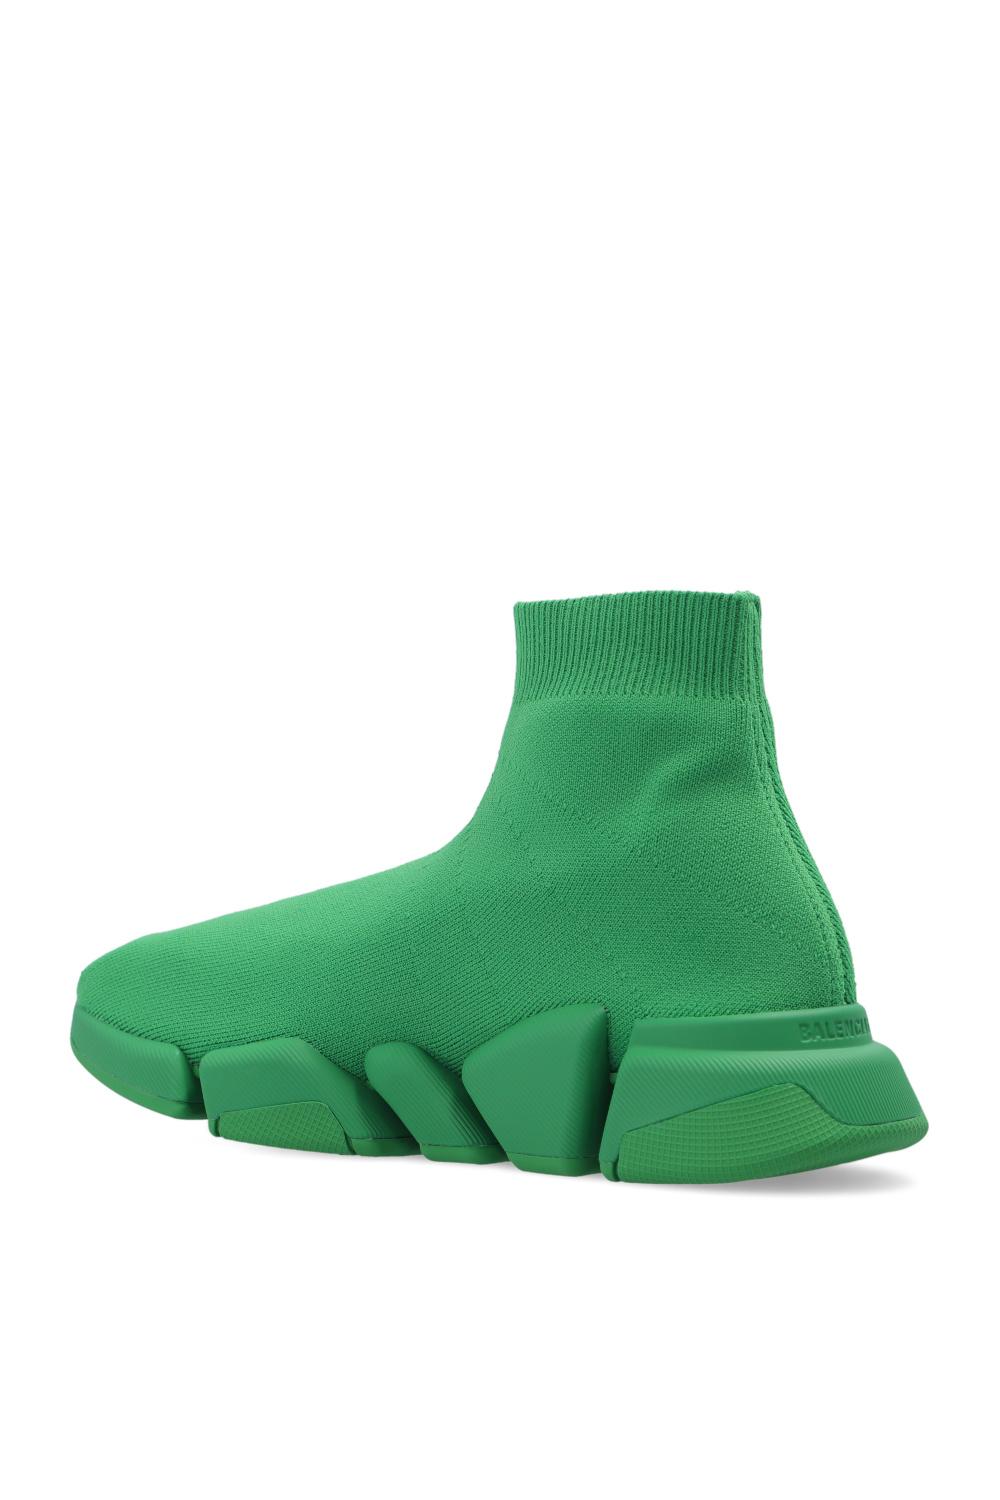 Balenciaga 'speed 2.0 Lt' Socks Sneakers in Green | Lyst